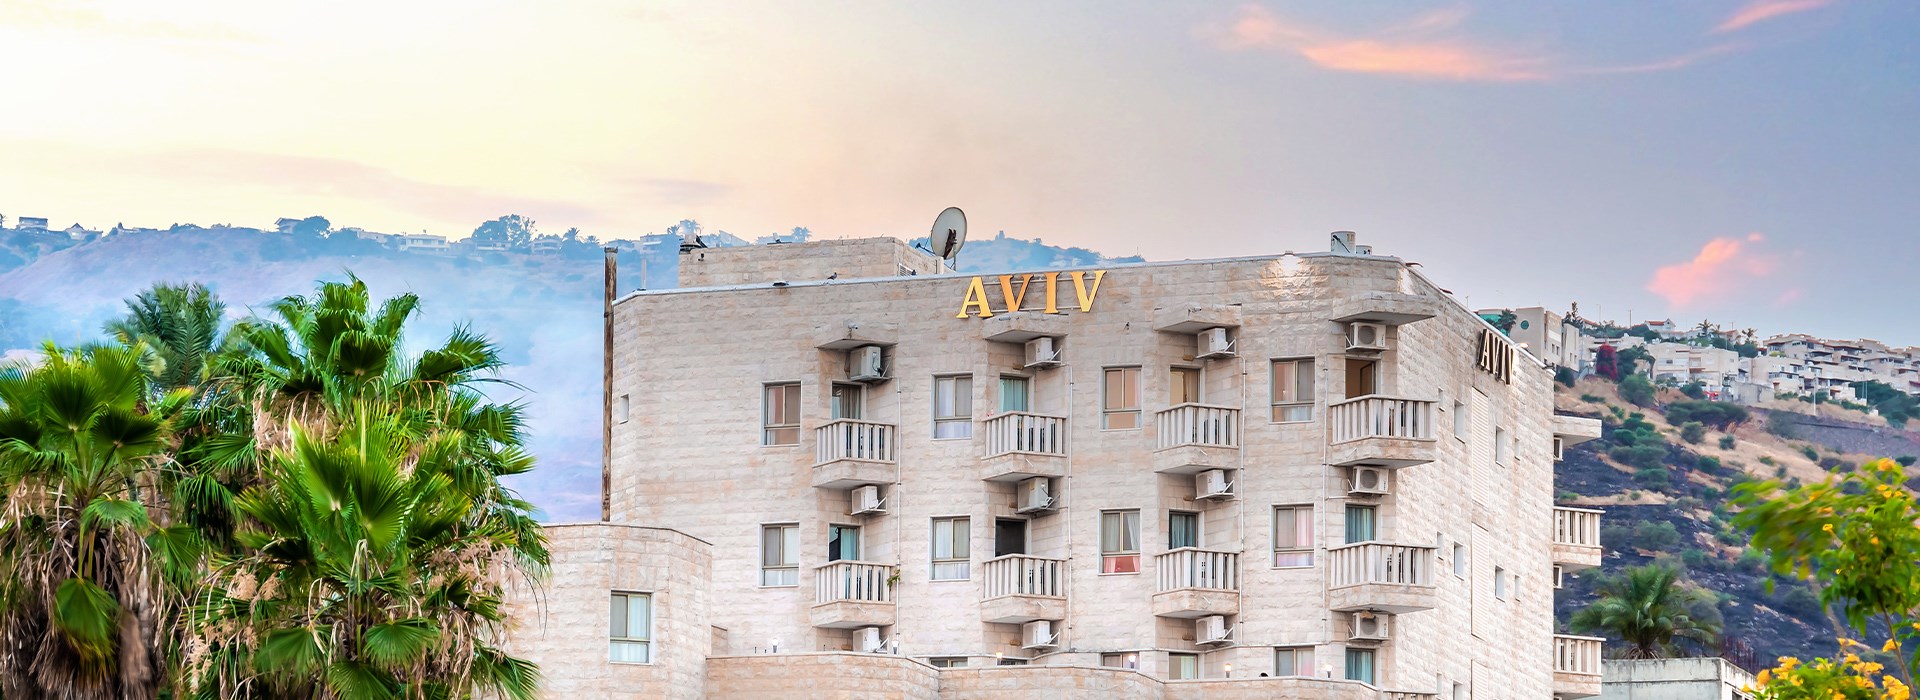 Aviv Tiberias Hotel - Contact